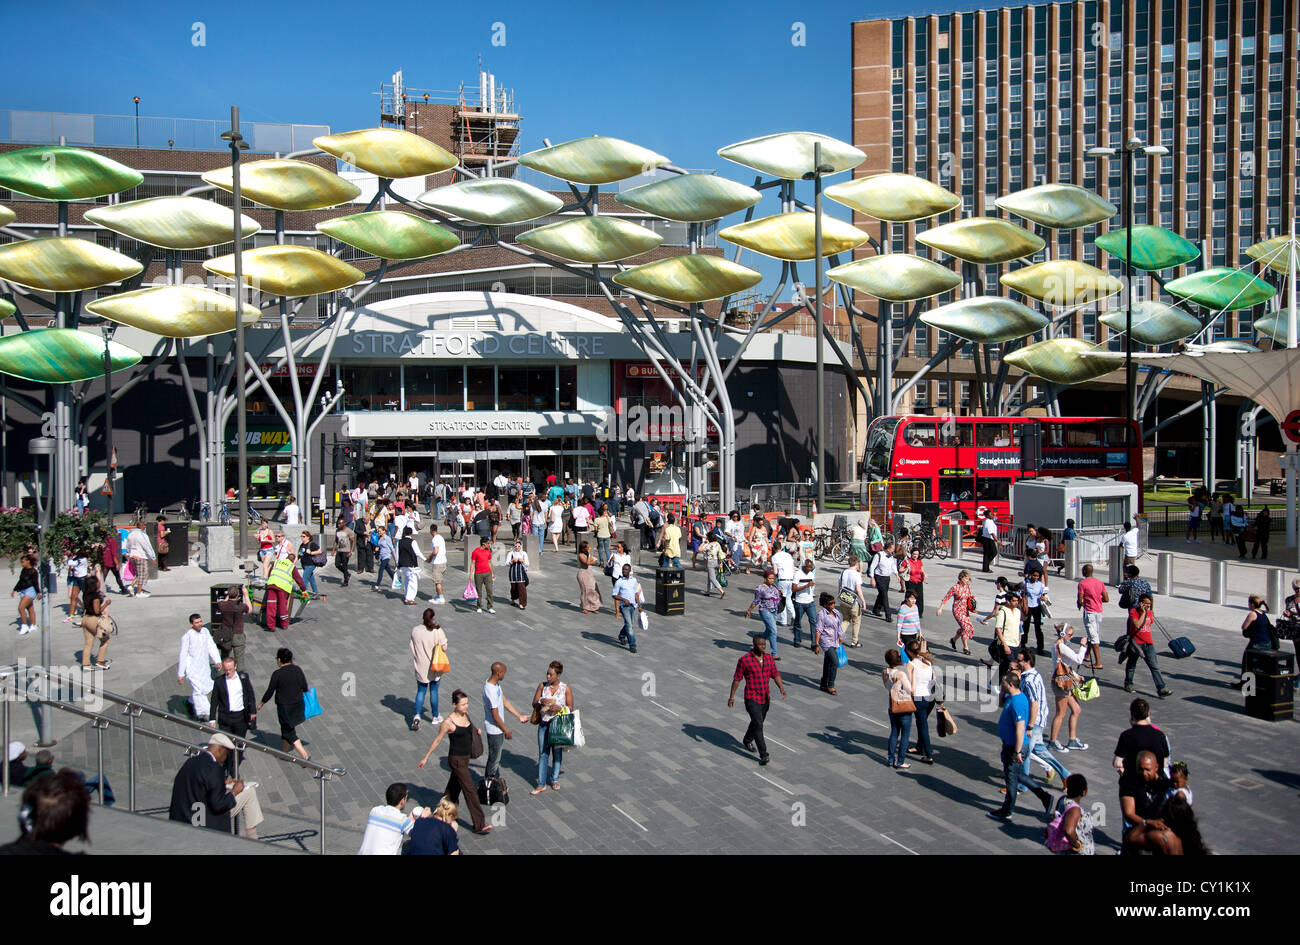 In Inghilterra. Londra. Una folla di persone che vivono al di fuori di Stratford Shopping Center che mostra il 'Stratford Shoal' scultura. Foto Stock